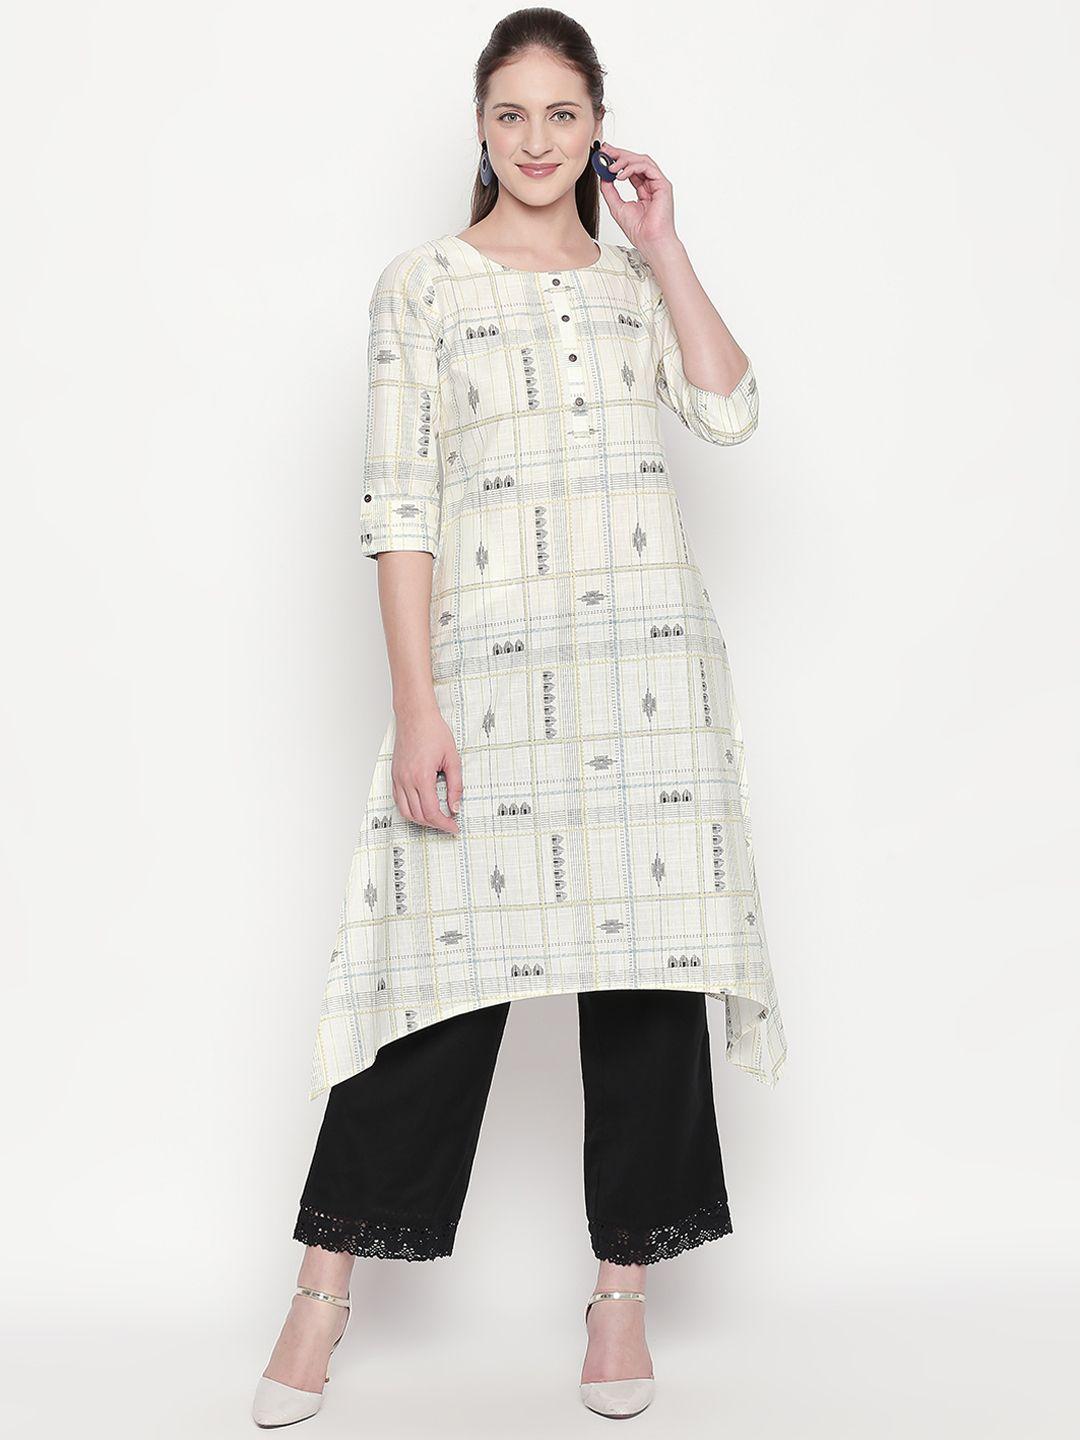 rangmanch by pantaloons women off-white printed asymmetric a-line kurta